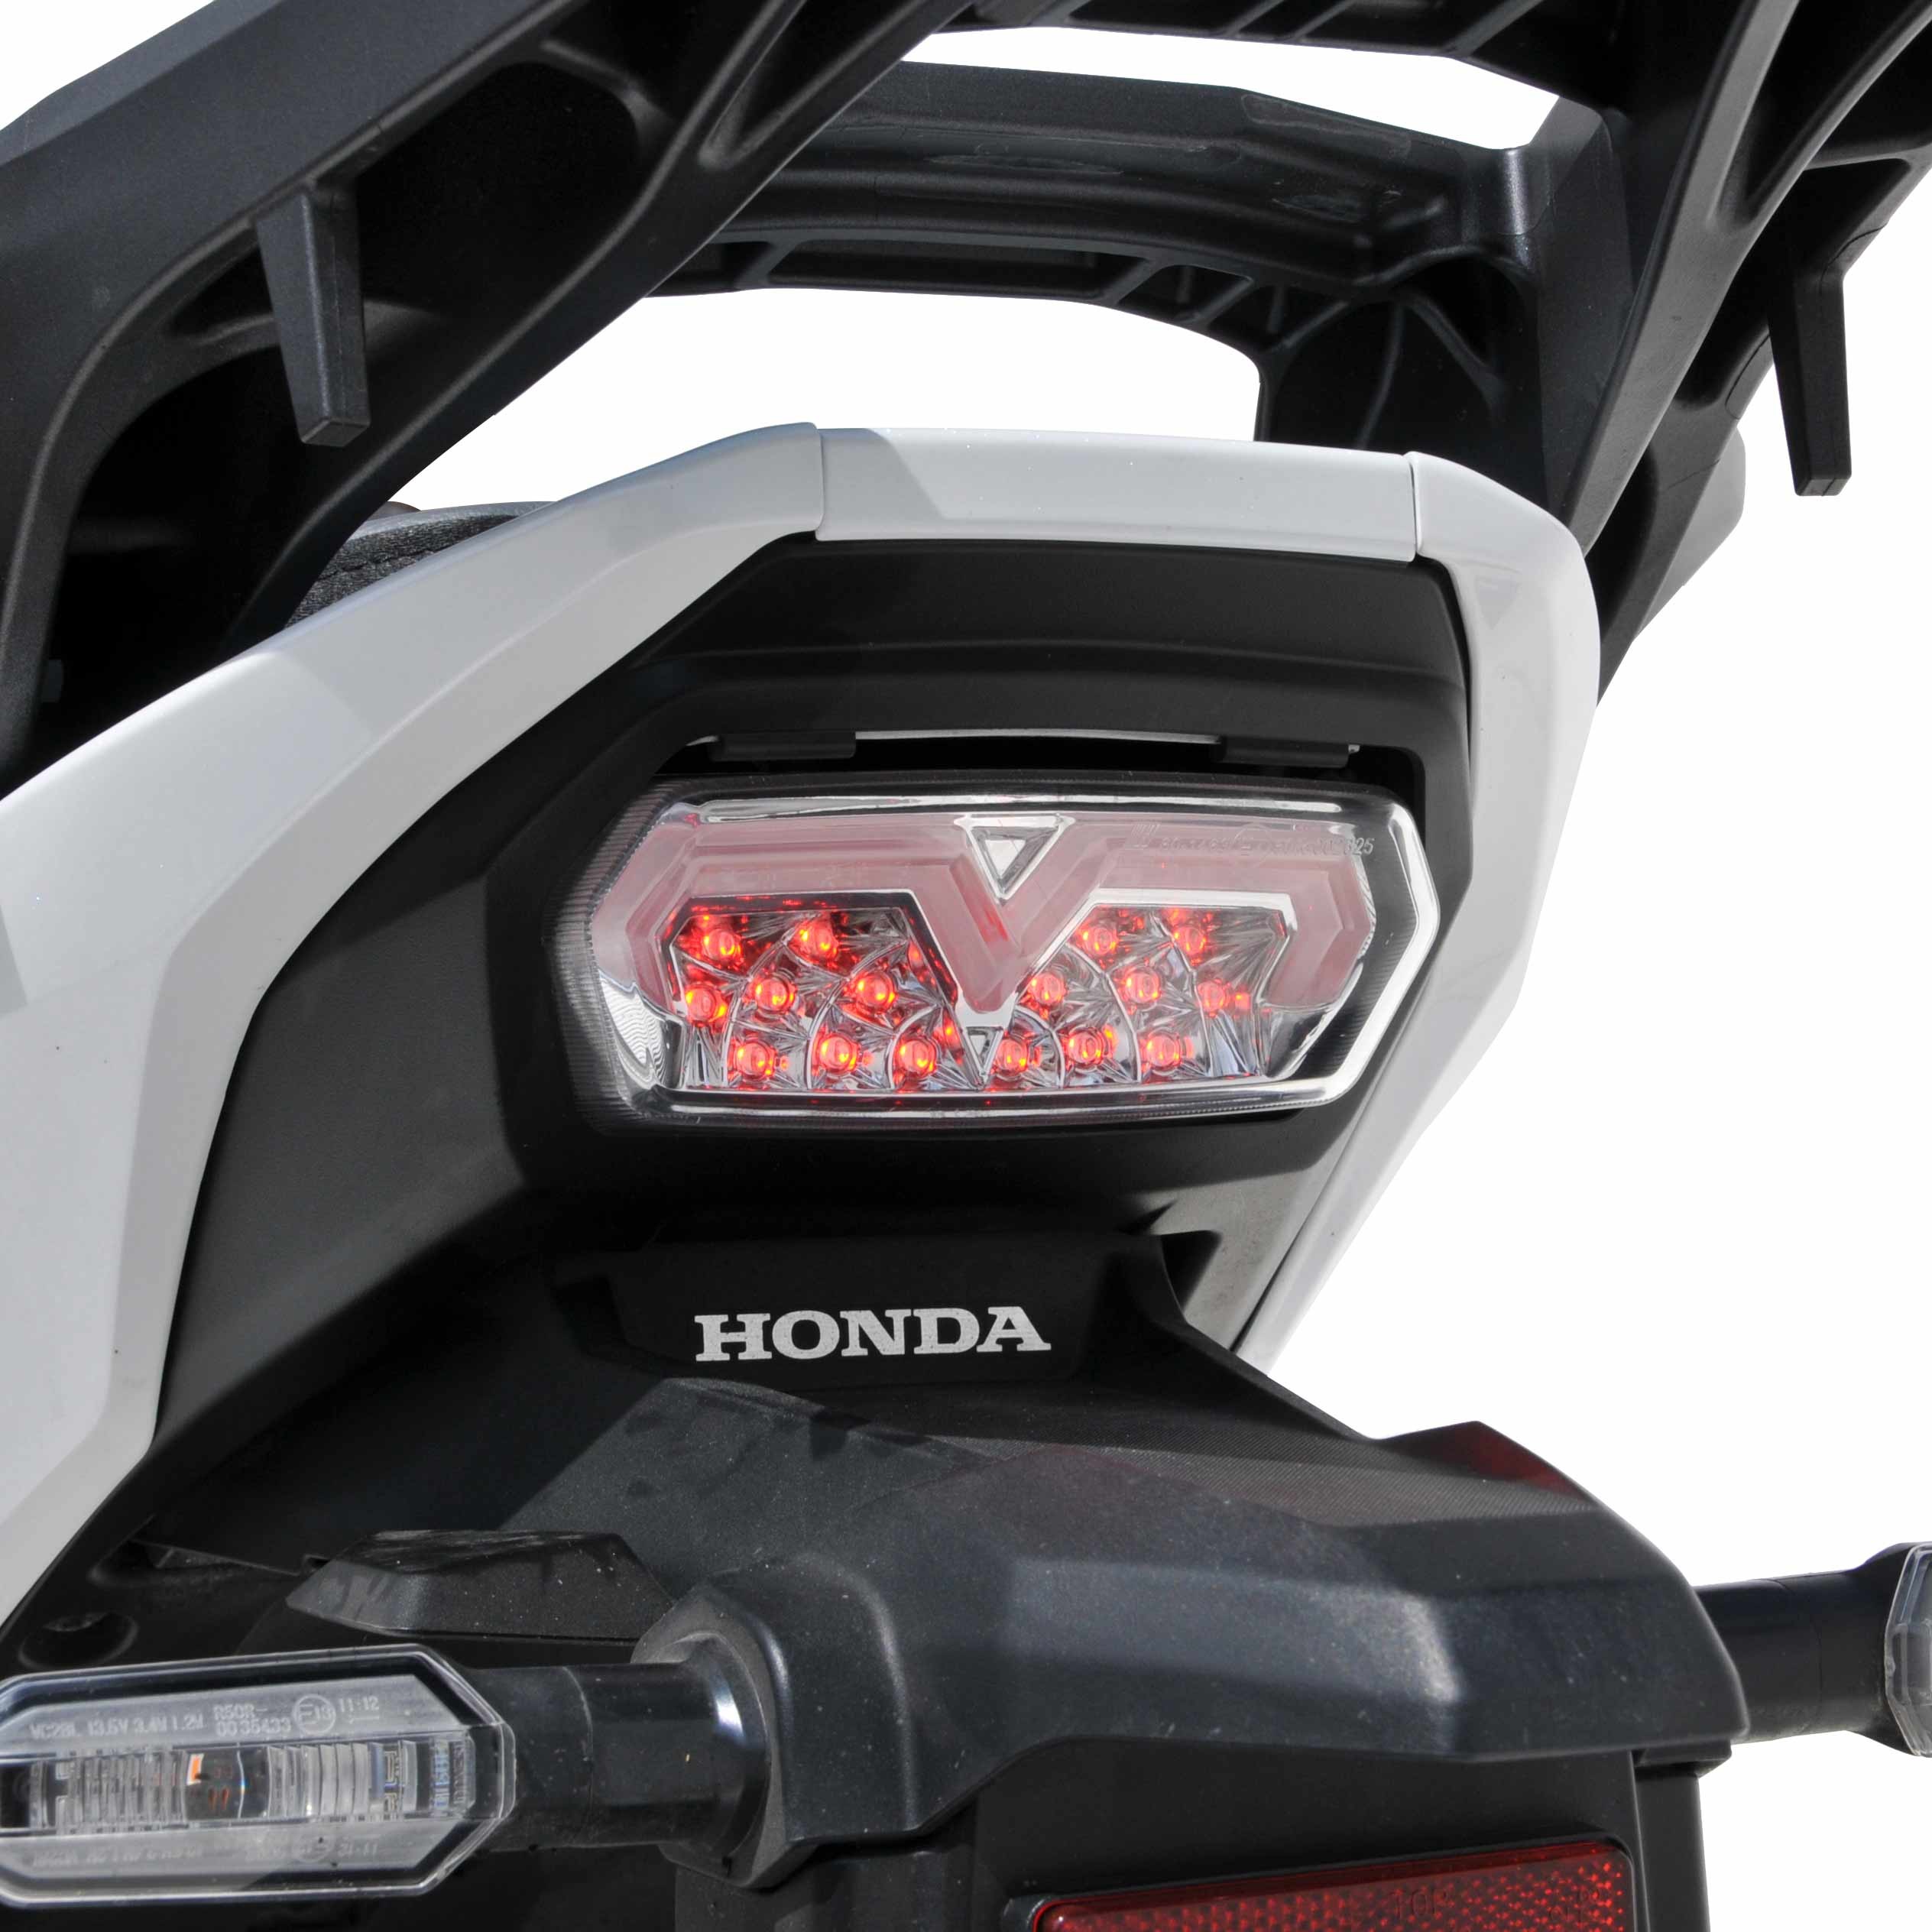 clignotants moto à leds avec feux stop et clignotants intégrés